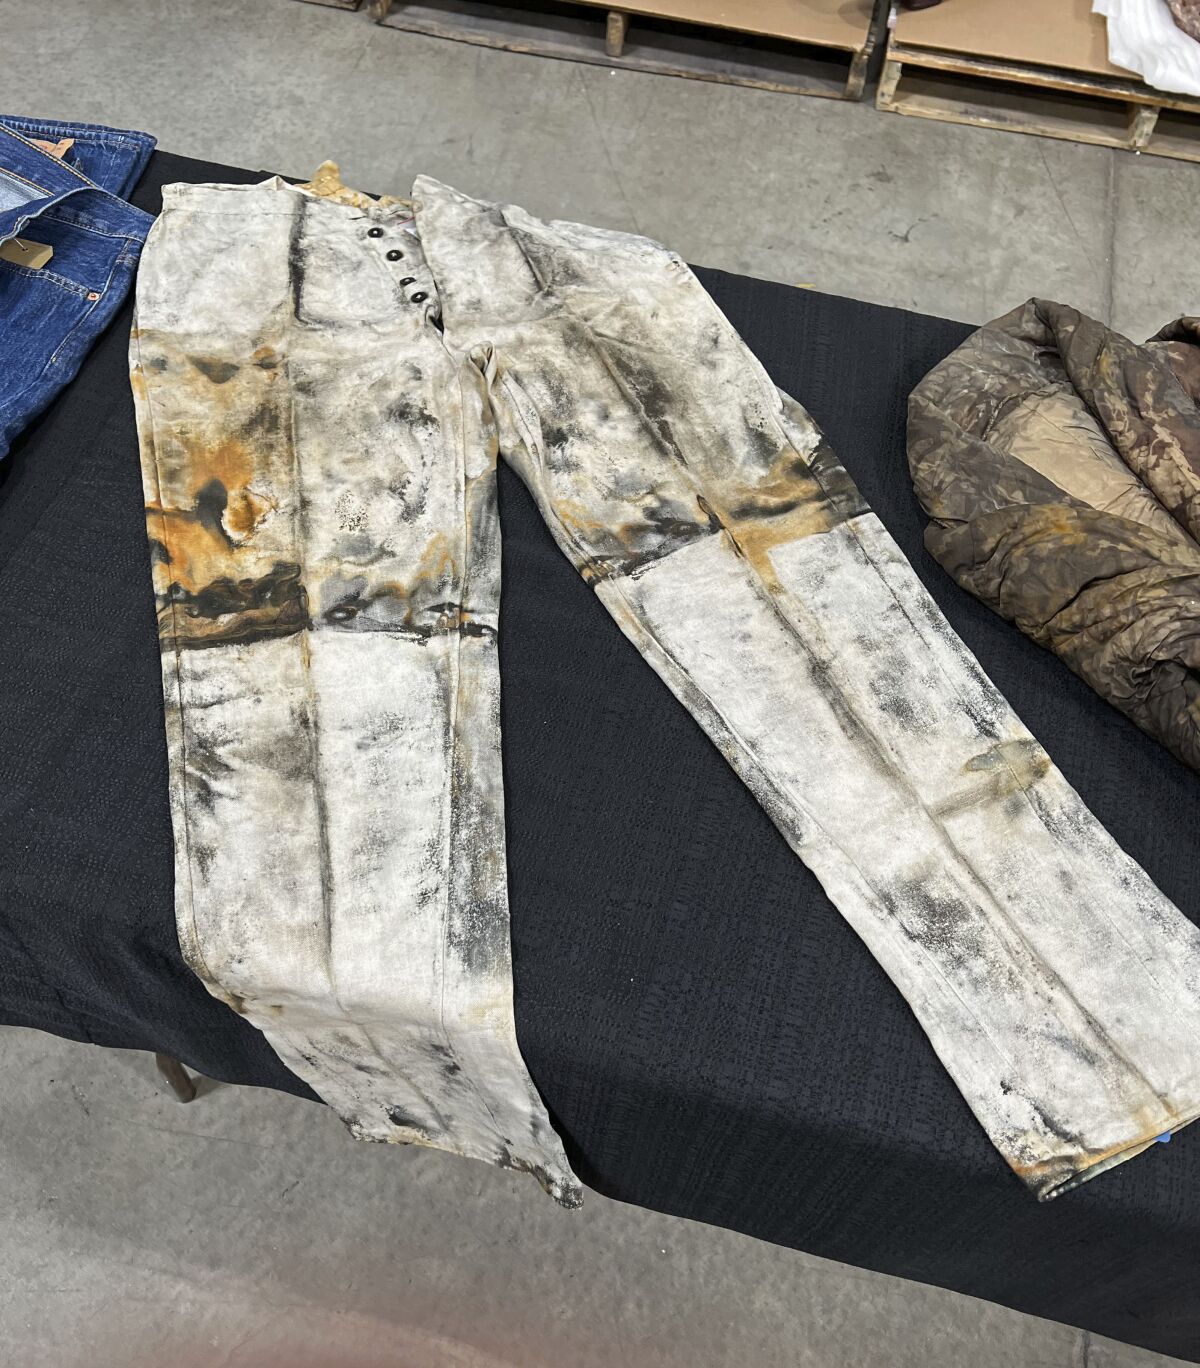  muestra unos pantalones de trabajo de minero con una bragueta de cinco botones, 